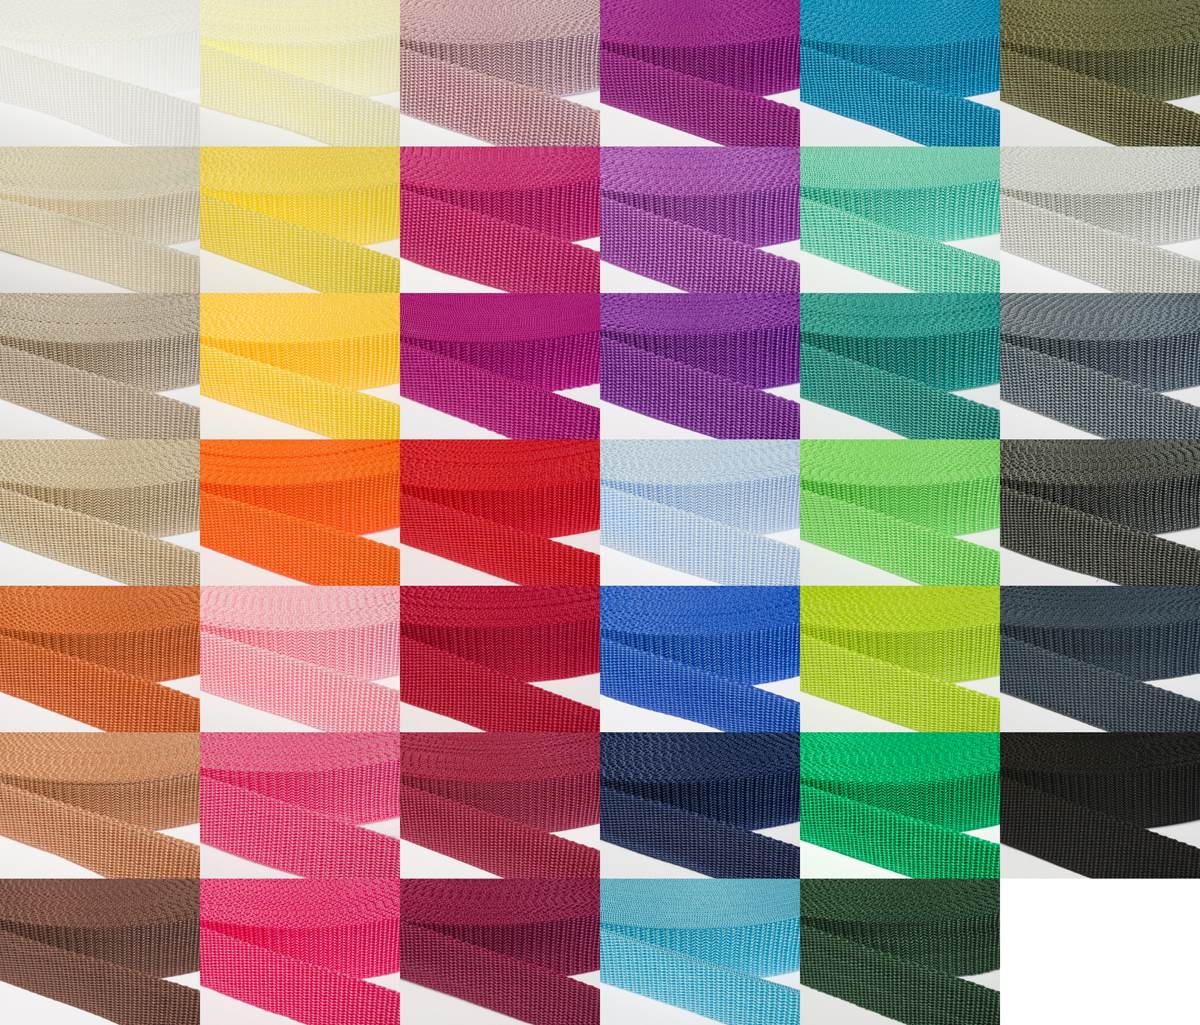 Gurtband 30mm breit aus Polypropylen in 41 Farben 40 - dunkelgrau/blau 50 Meter